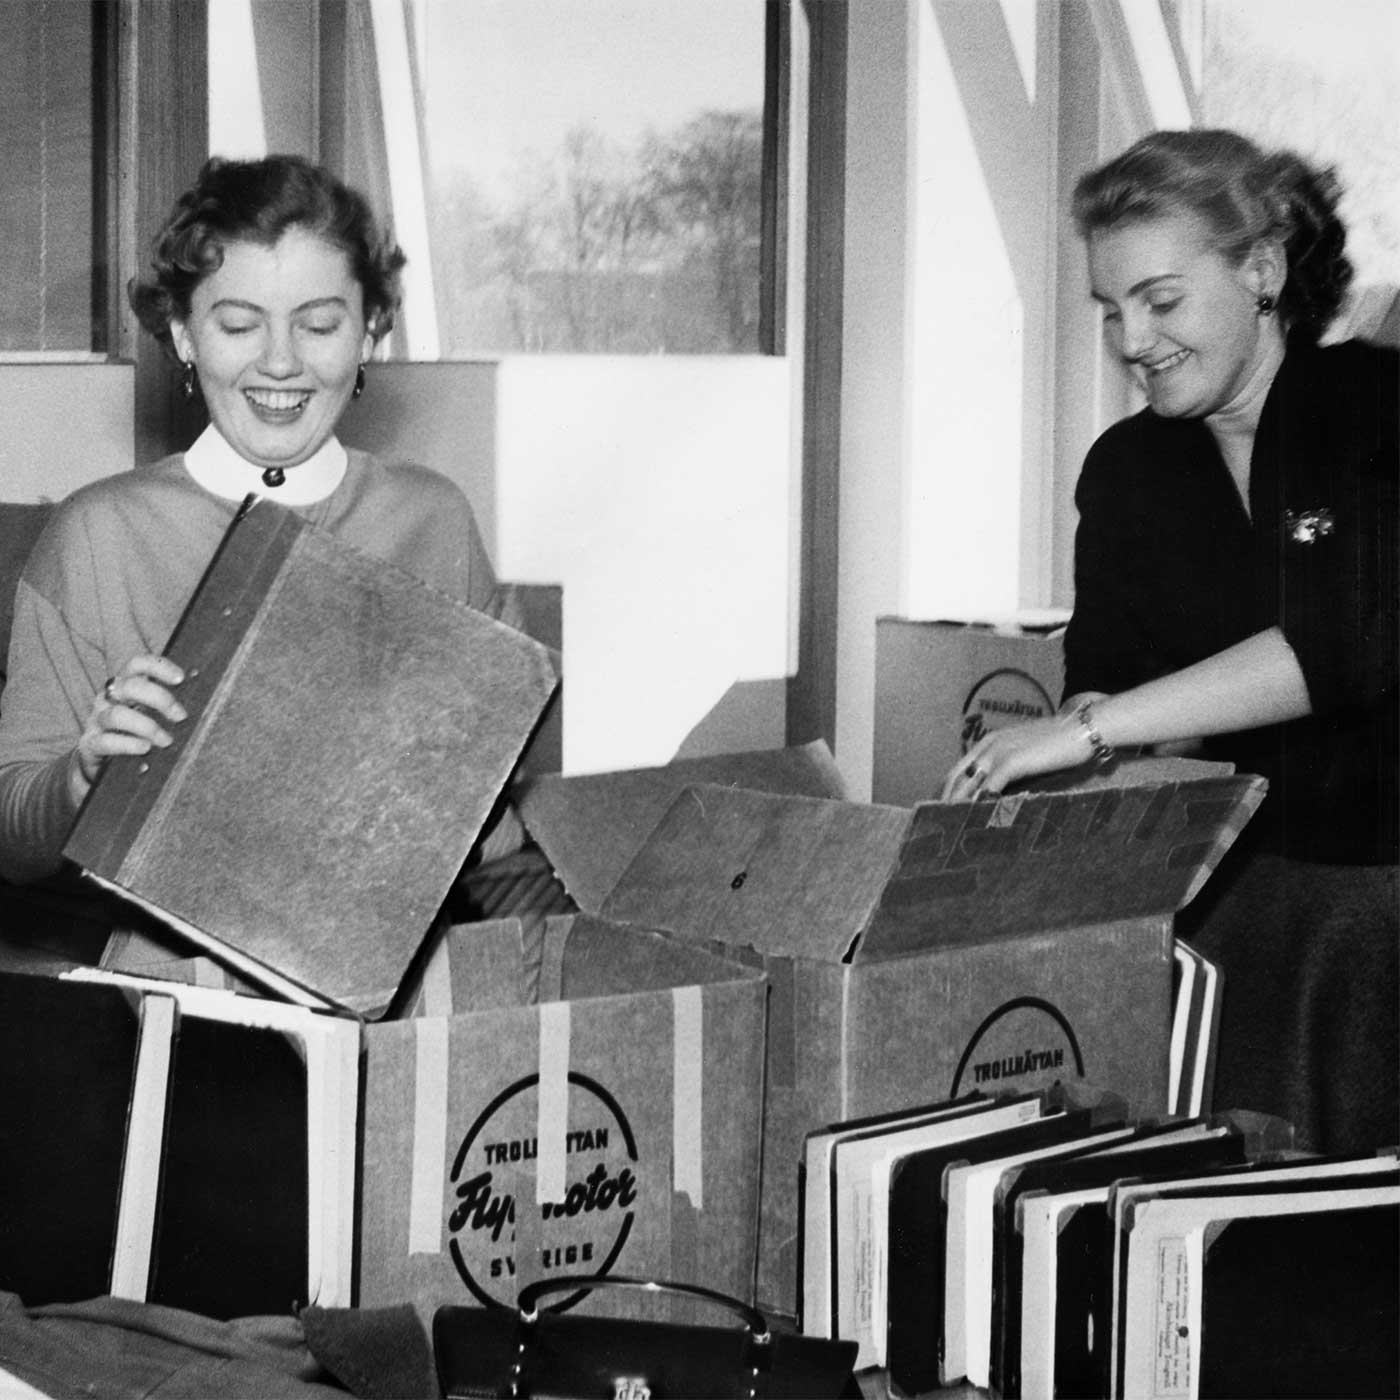 inflyttning-till-nya-kontoret-i-februari-1956-ur-gkn-aerospace-sweden-abs-historiska-bildarkiv